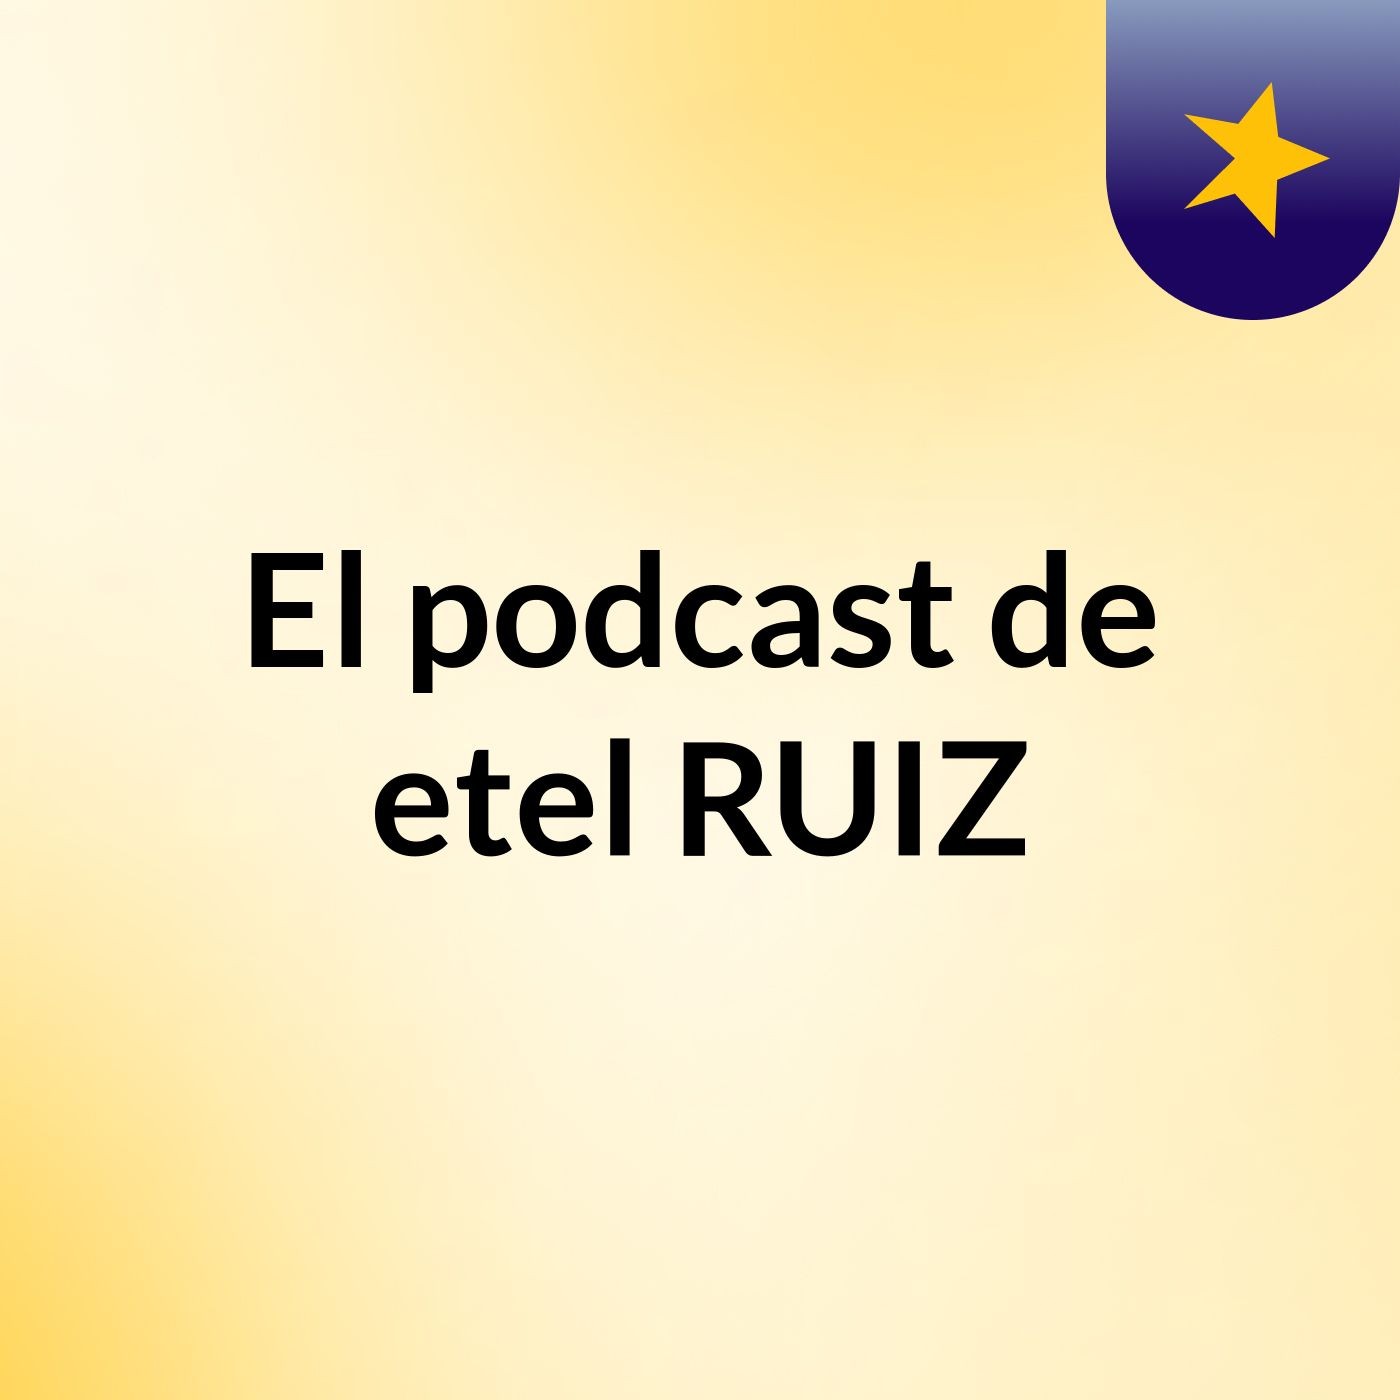 El podcast de etel RUIZ